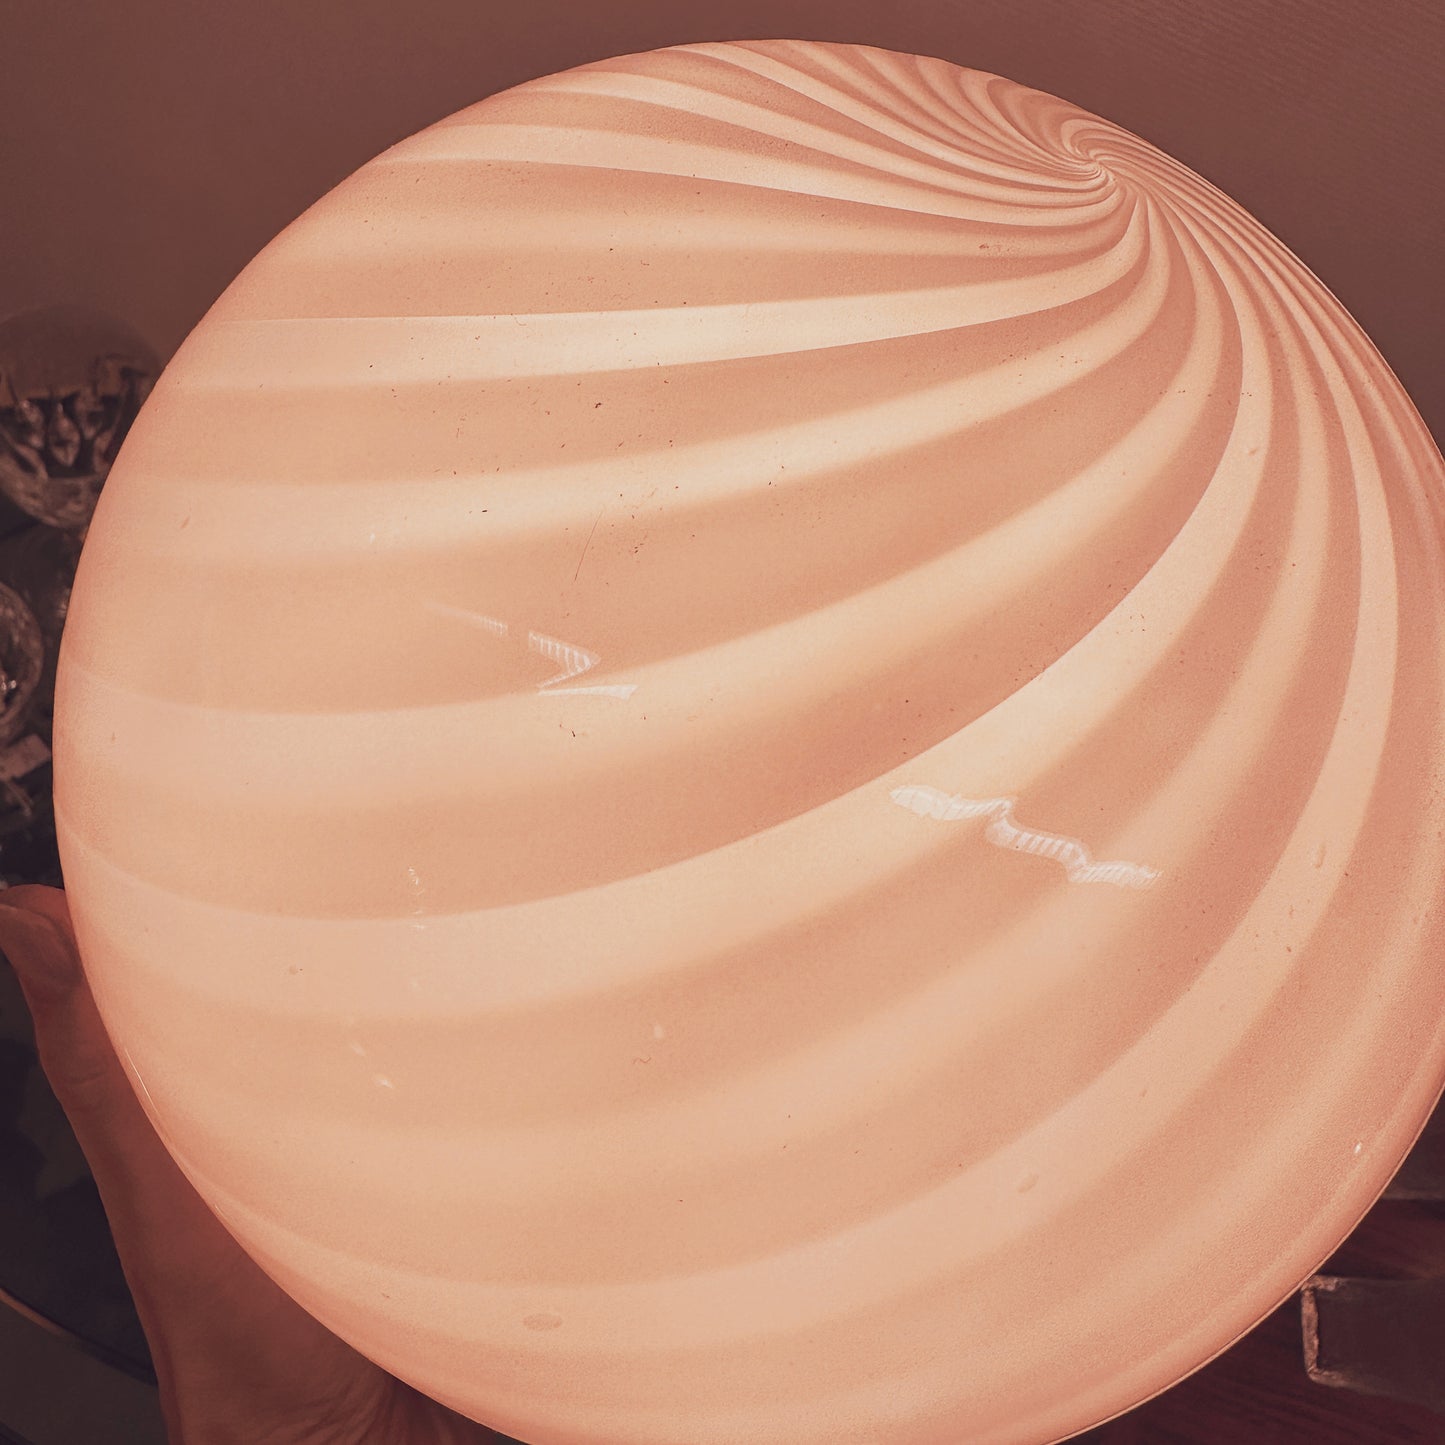 Cute swirl table lamp of Murano glass